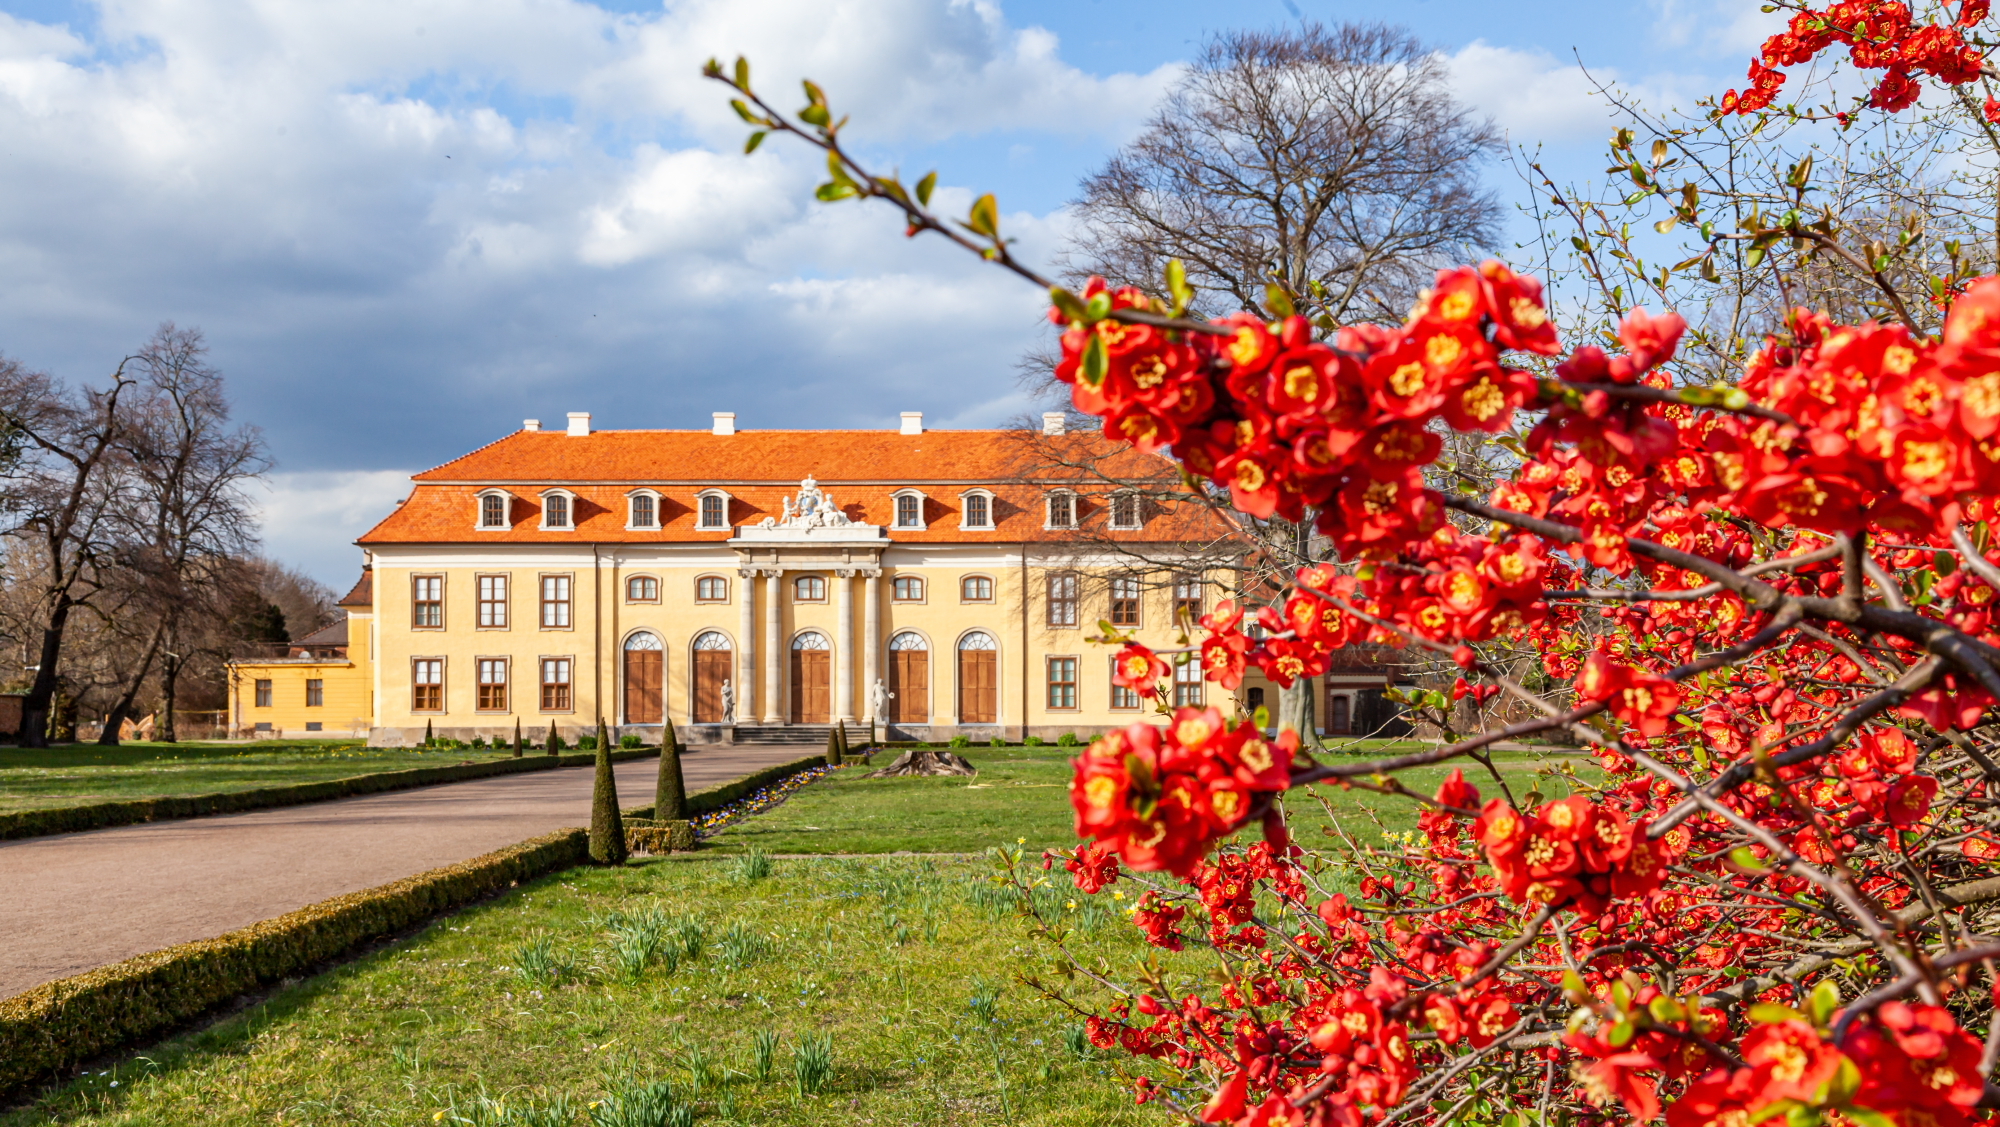 Schloss und Schlosspark Mosigkau im Gartenreich Dessau-Wörlitz - ©Photographer: P. Dafinger